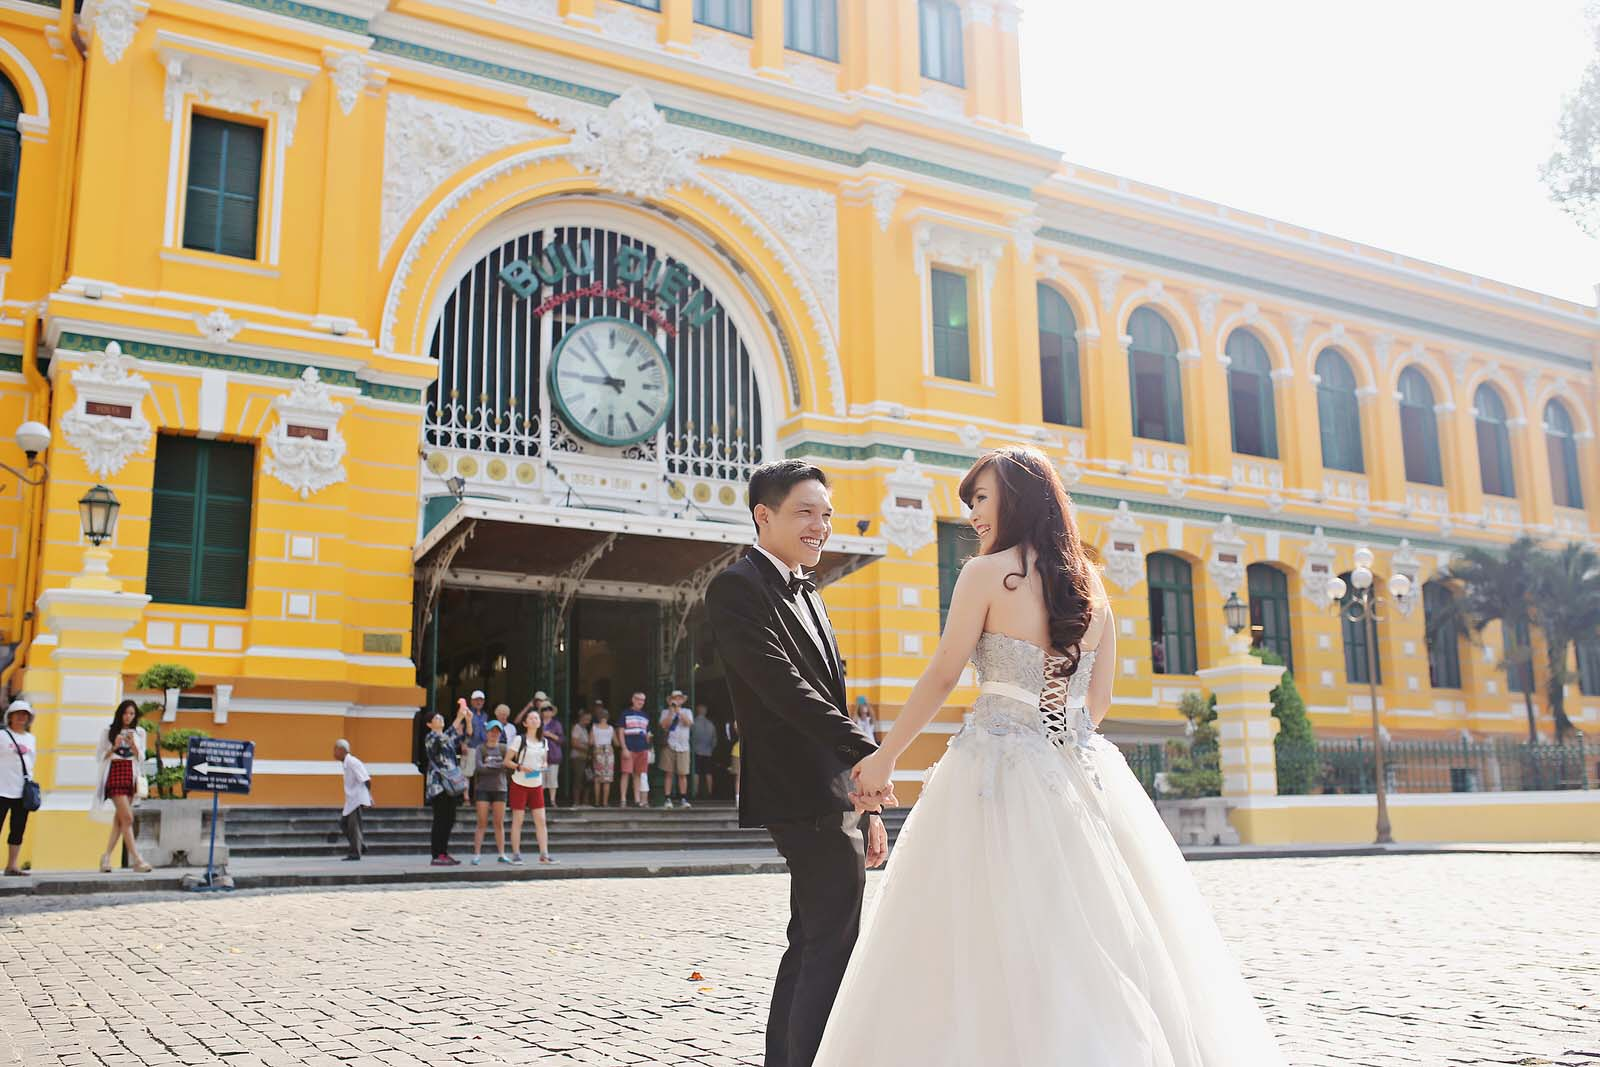 Những địa điểm chụp hình cưới đẹp ở Thành phố Hồ Chí Minh không nên bỏ lỡ